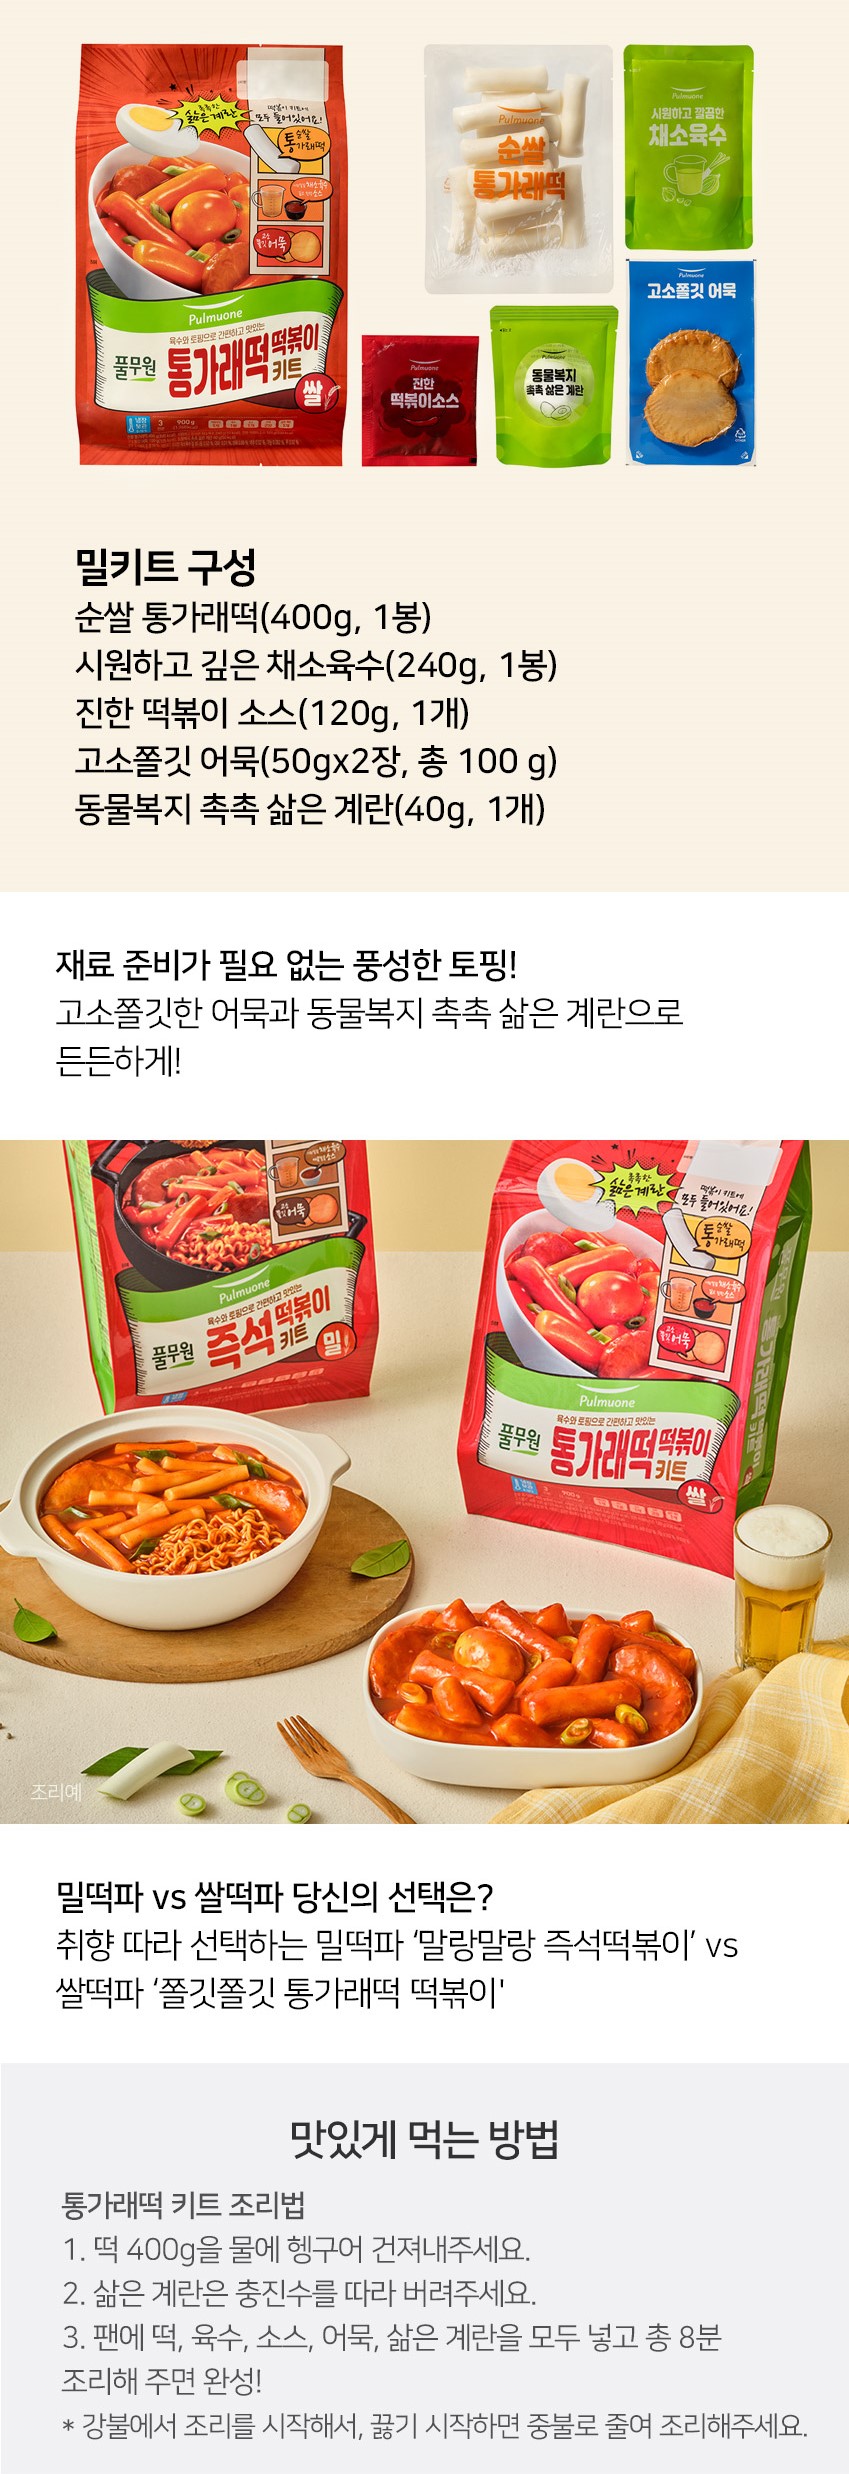 韓國食品-[풀무원] 통가래떡떡볶이키트 900g